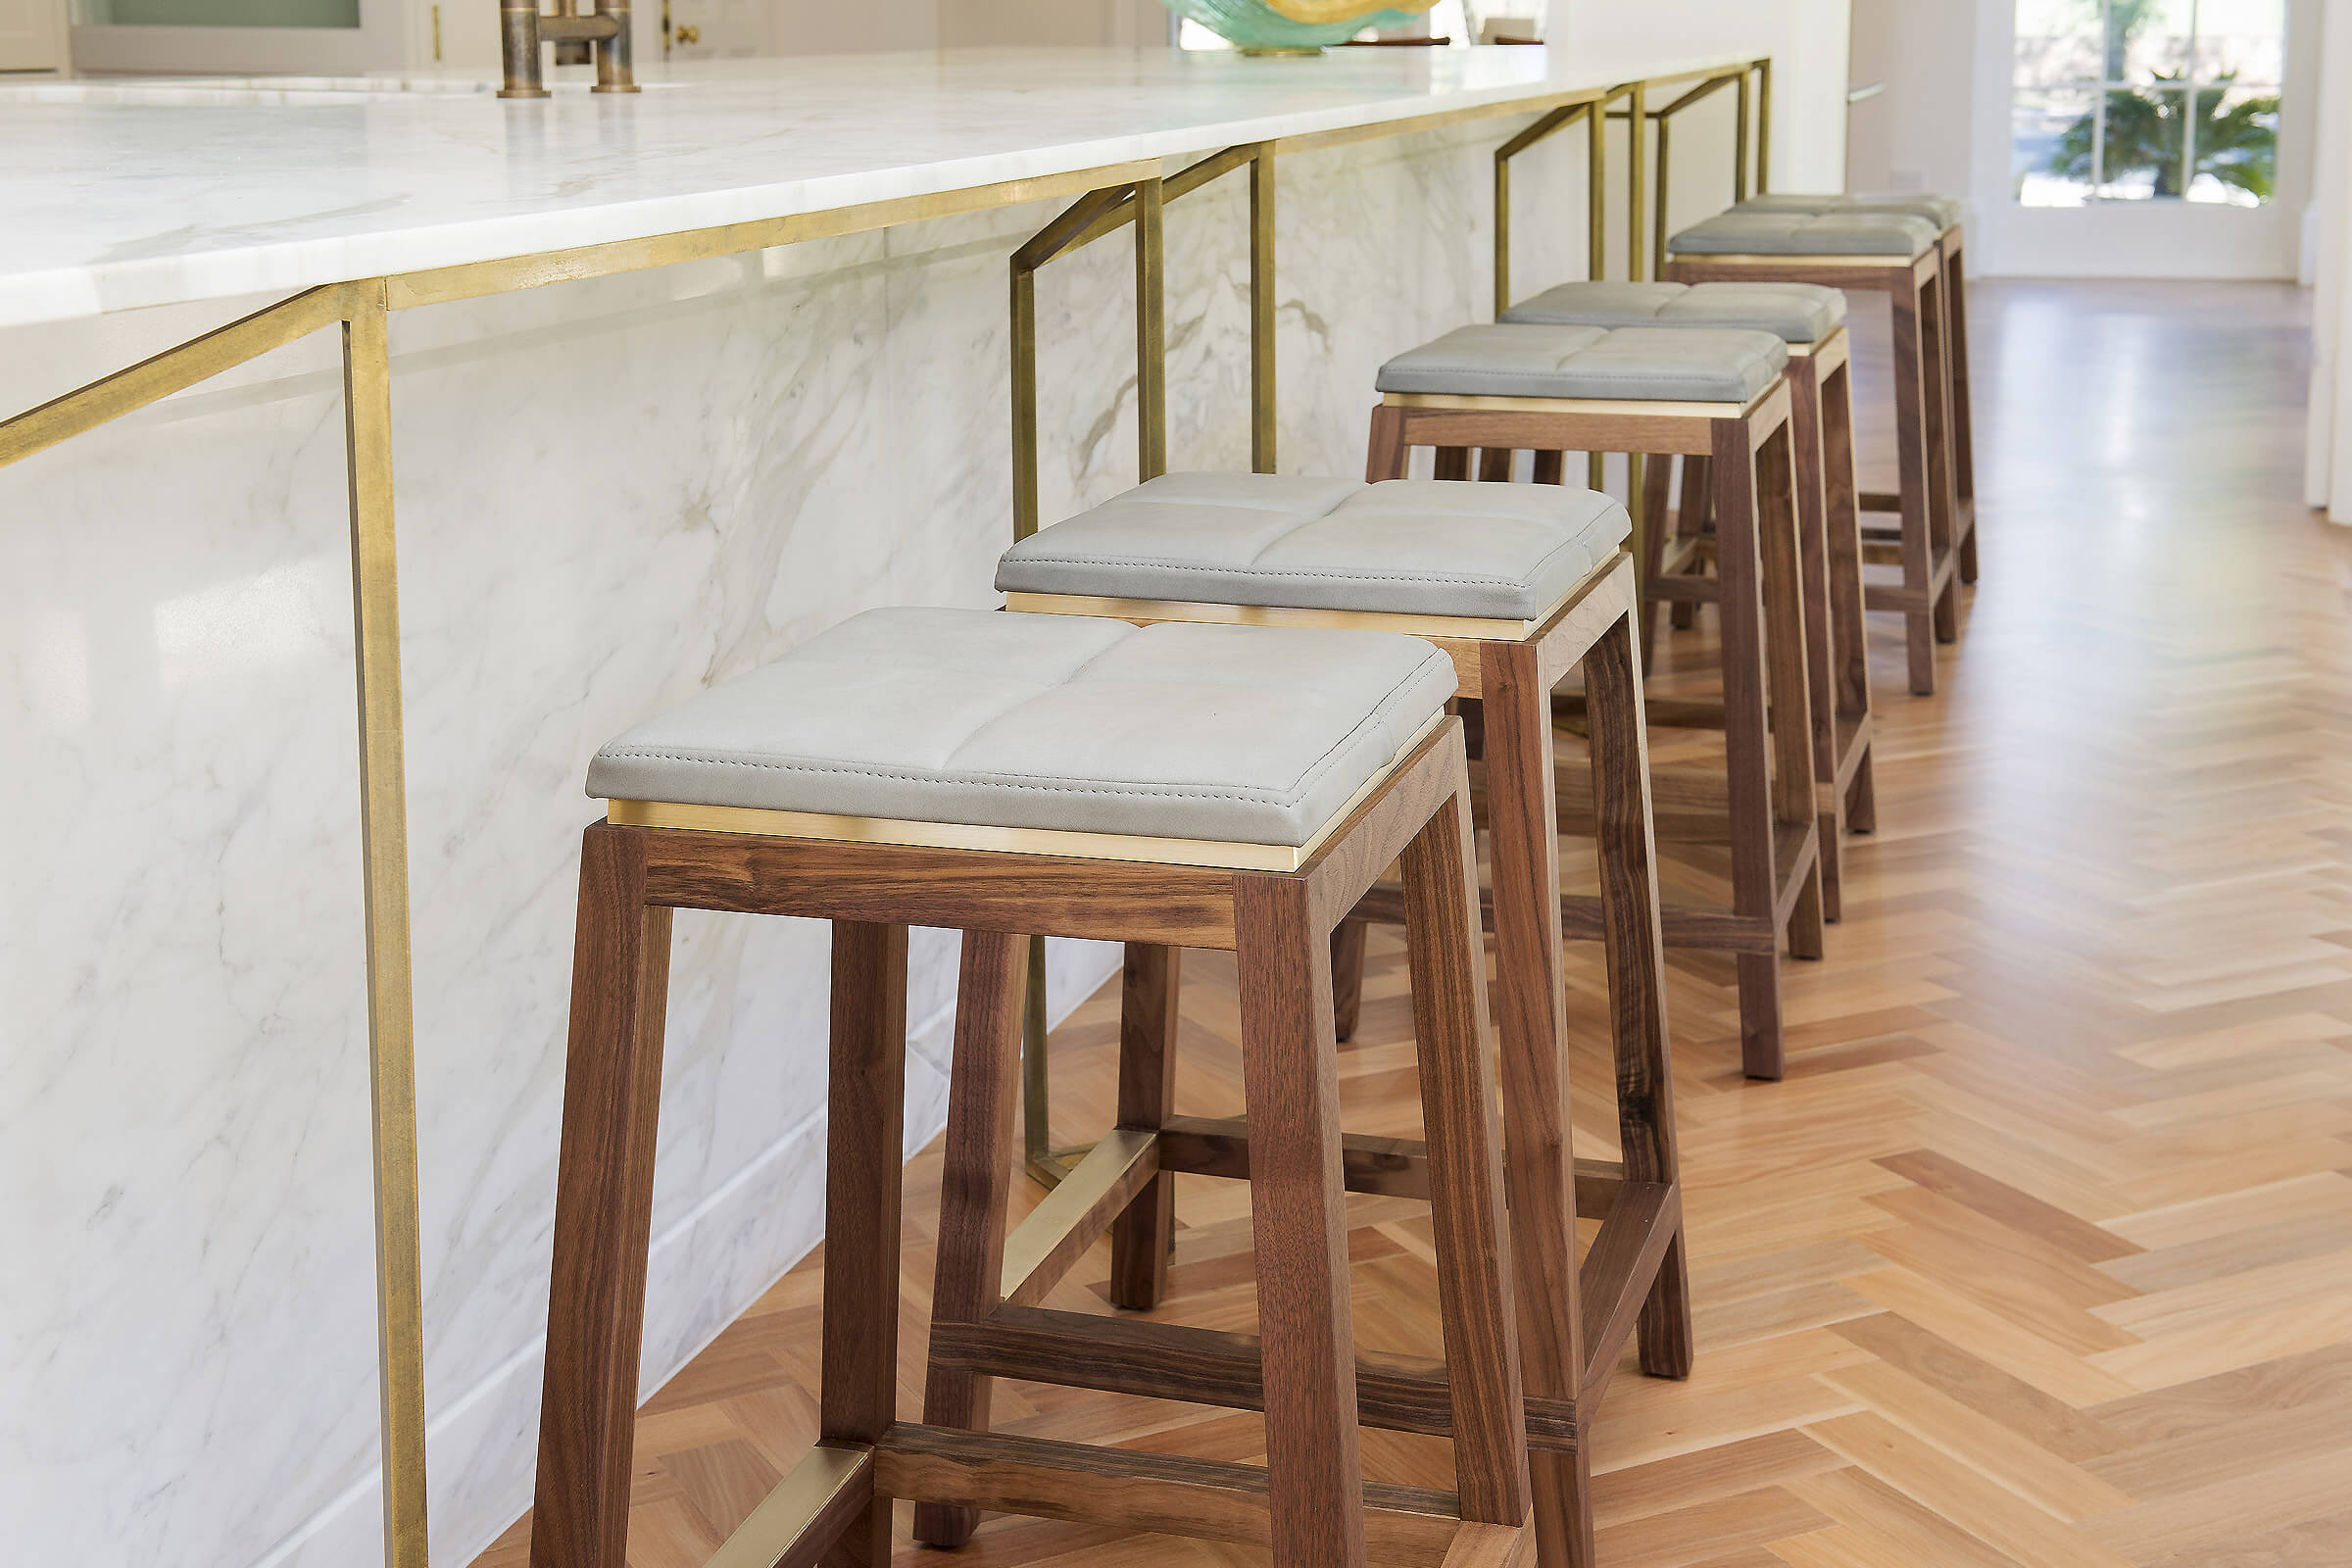 designer kitchen stools australia